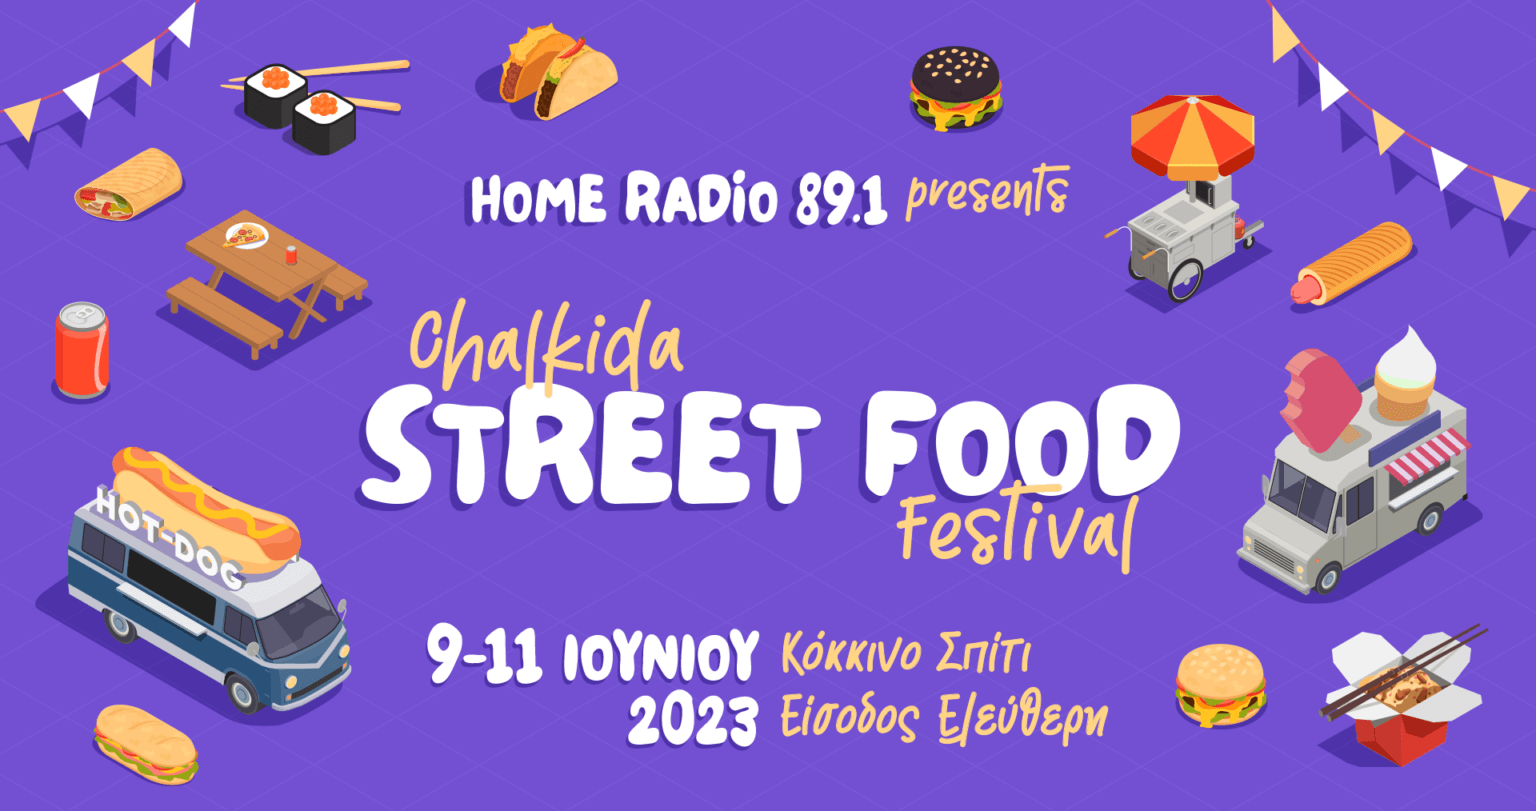 Chalkida Street Food Festival 2023